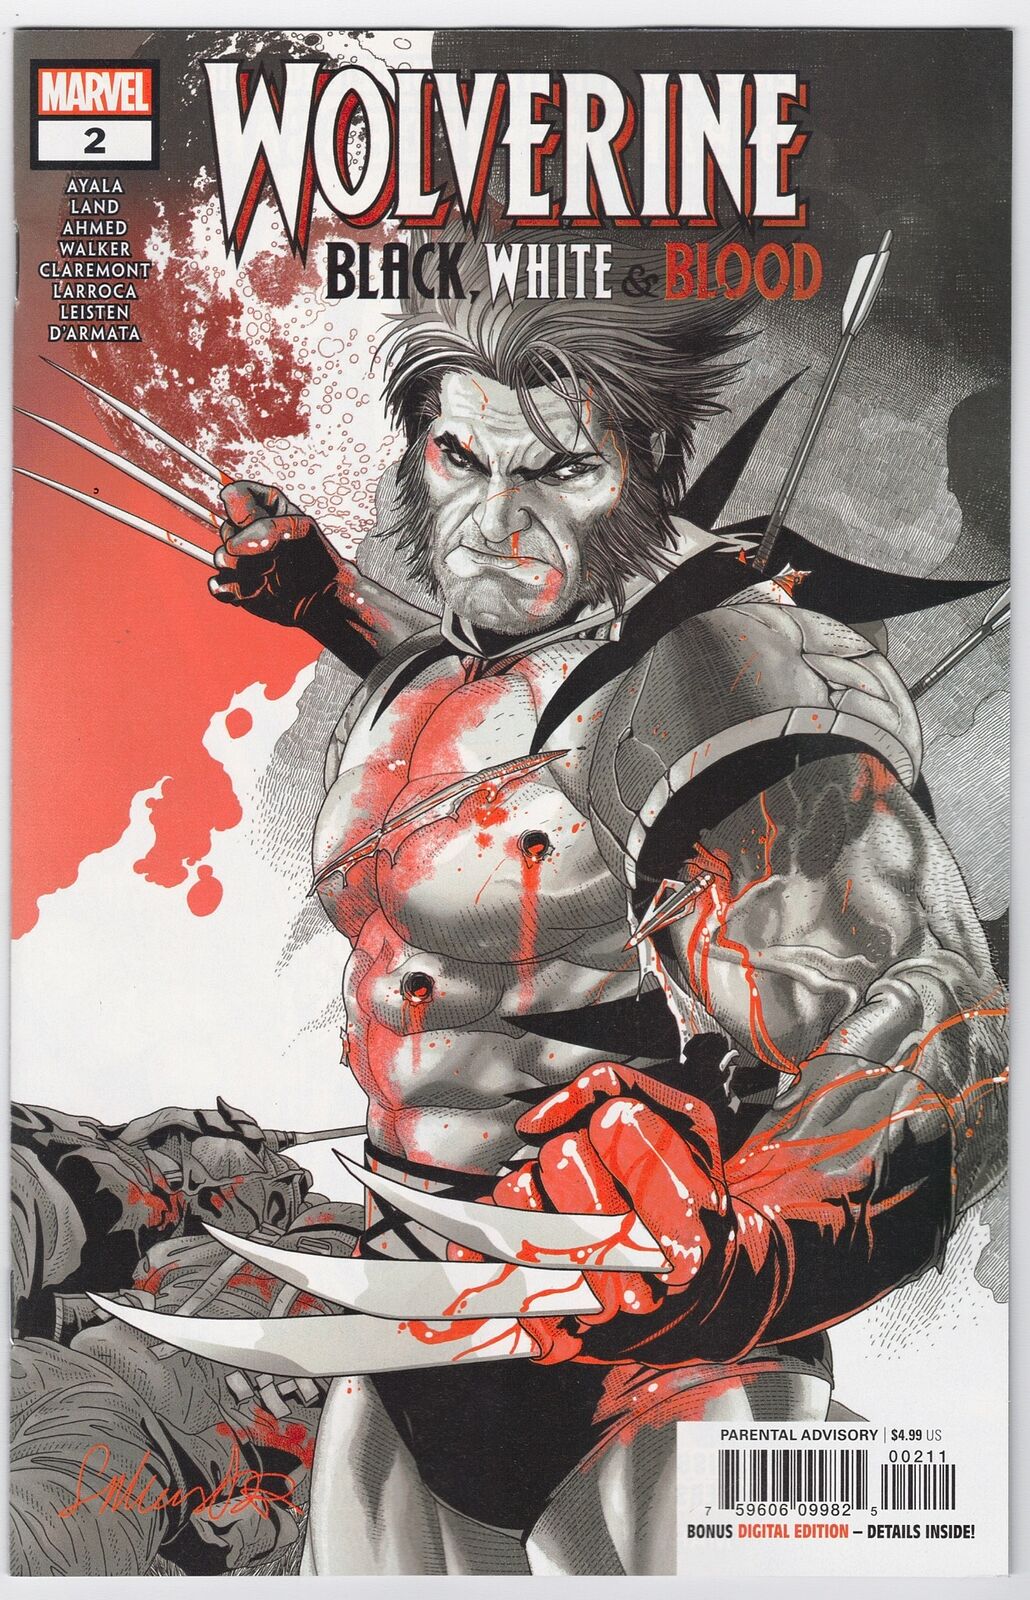 Wolverine Black White Blood #2 (Of 4) Secret No Mask Variant